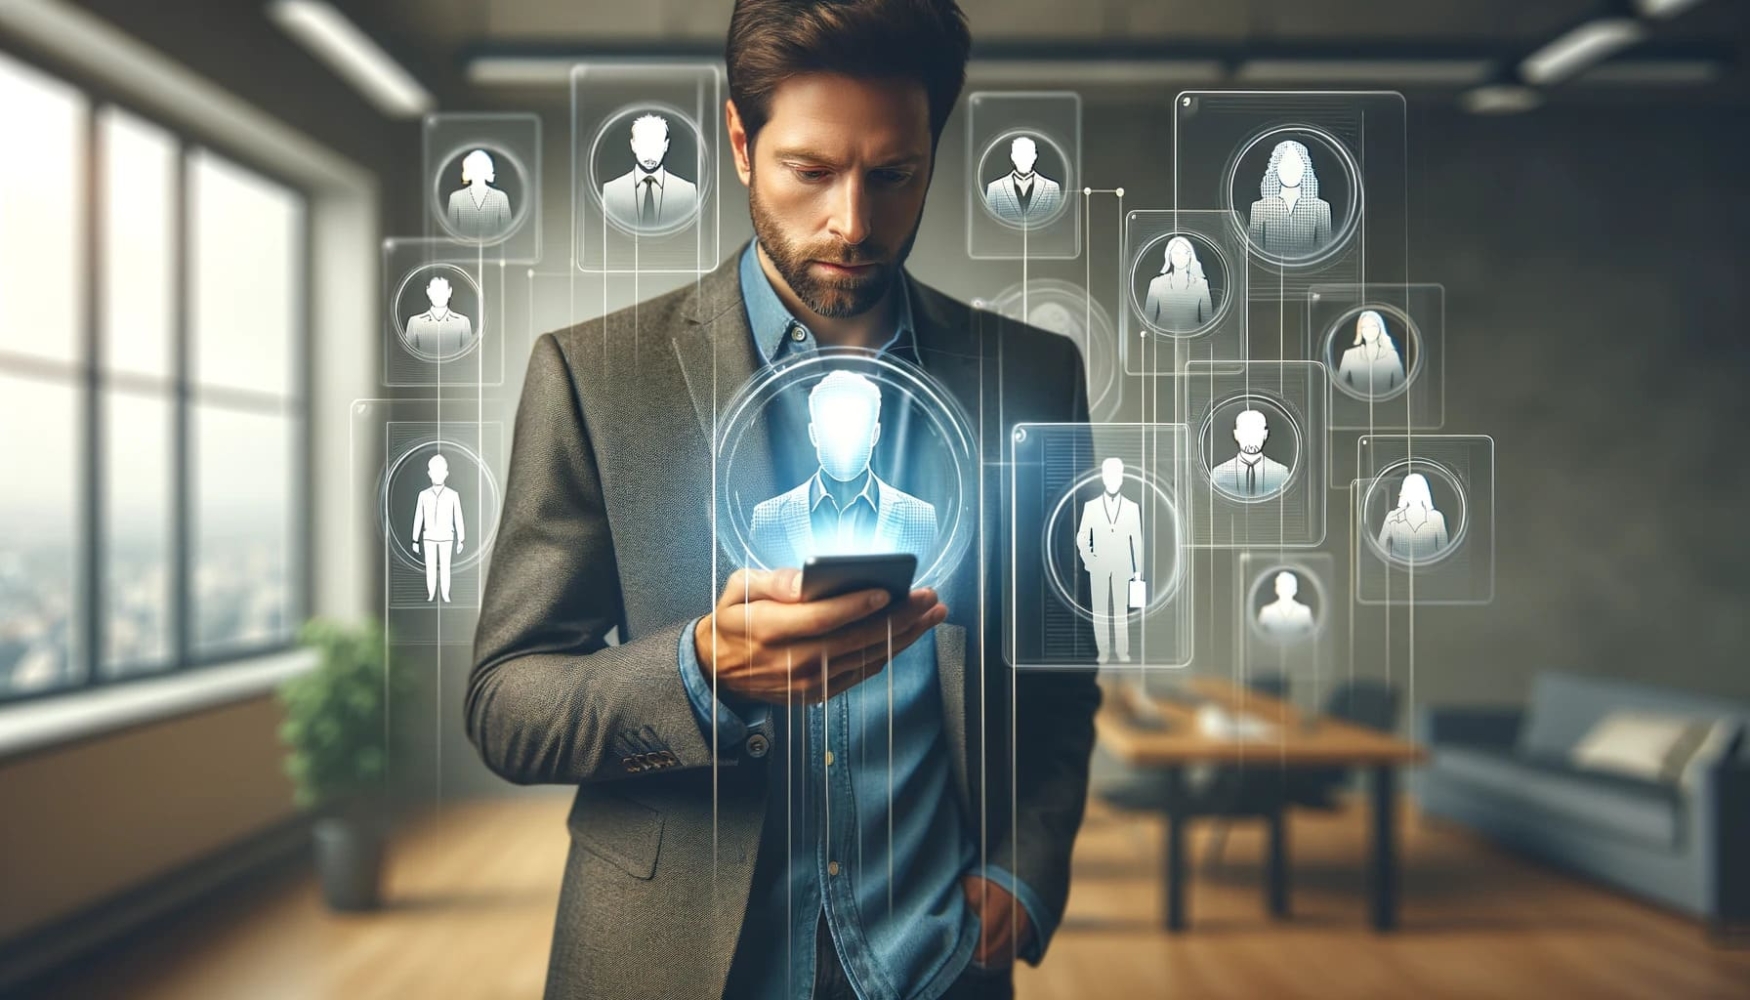 Ein Mann steht in einem Raum, trägt einen Anzug und schaut auf ein Handy, um ihn herum sind Symbole von Benutzerprofilen zu sehen